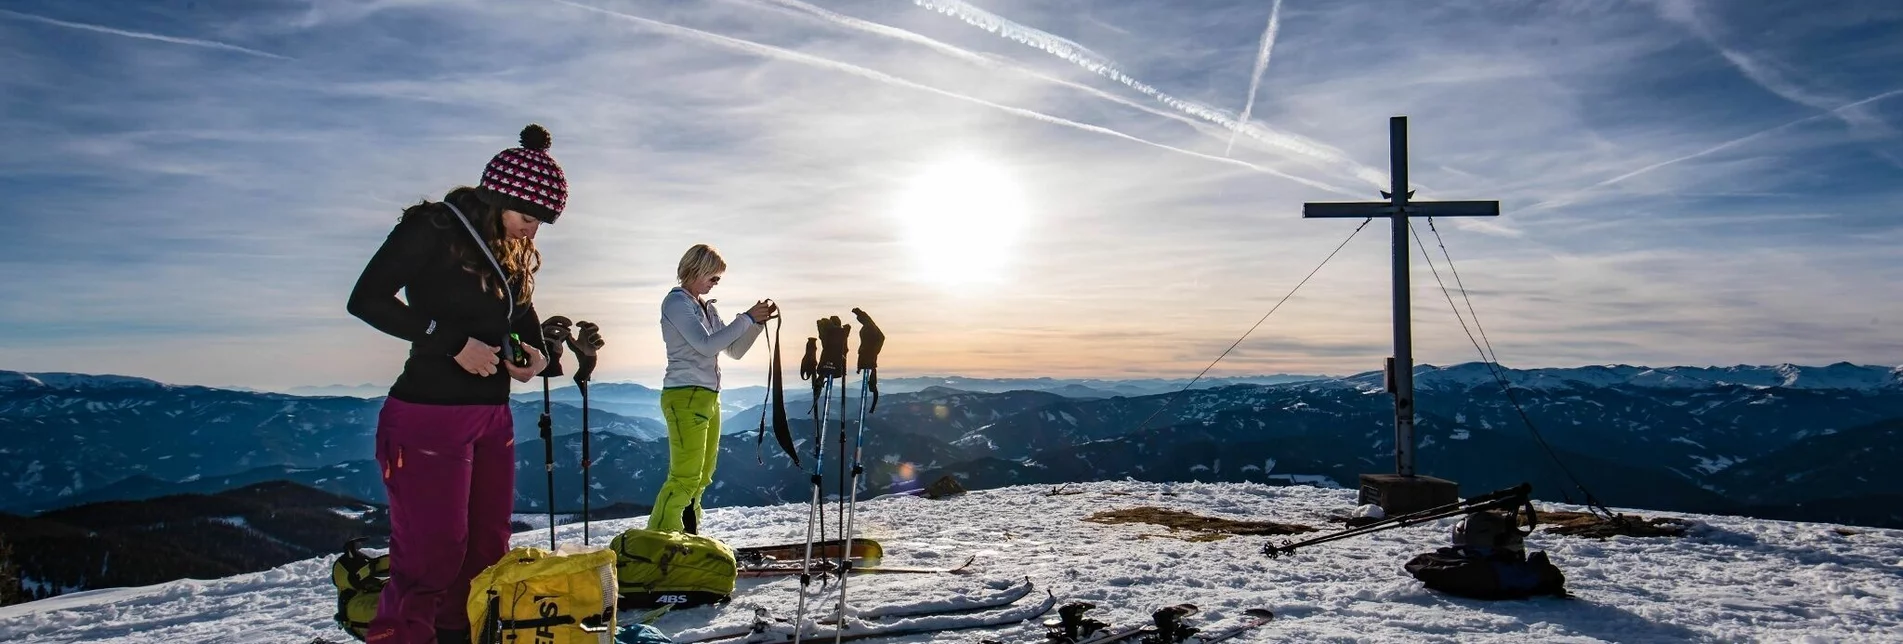 Ski Touring Rosenkogel - Touren-Impression #1 | © Martin Edlinger